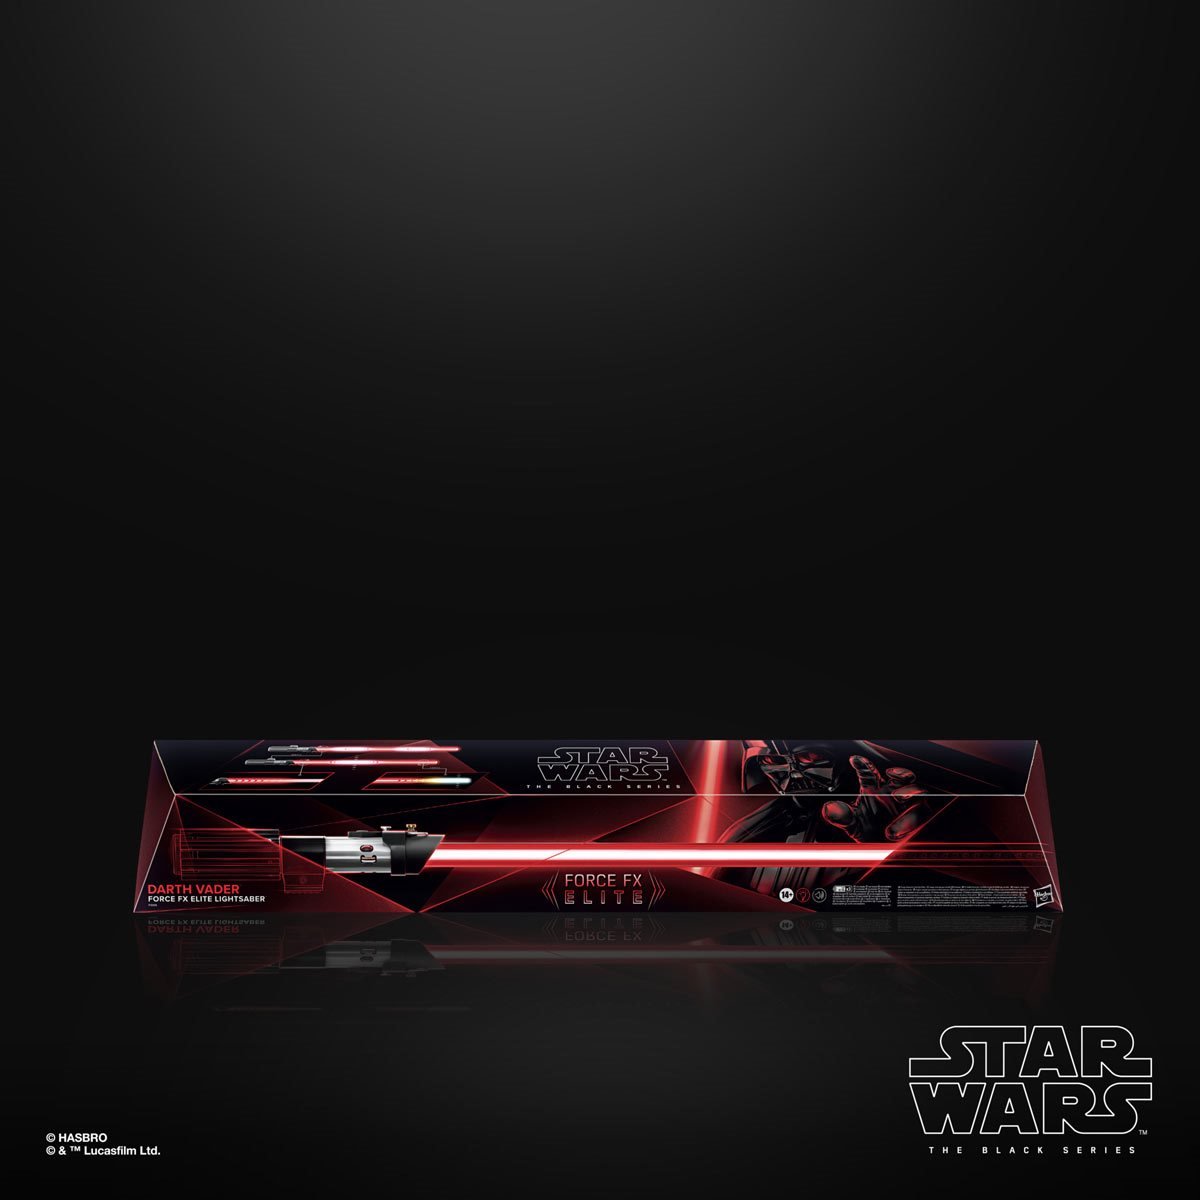 Star Wars The Black Series Force FX Elite Lightsaber Darth Vader F39055L00 5010993965434